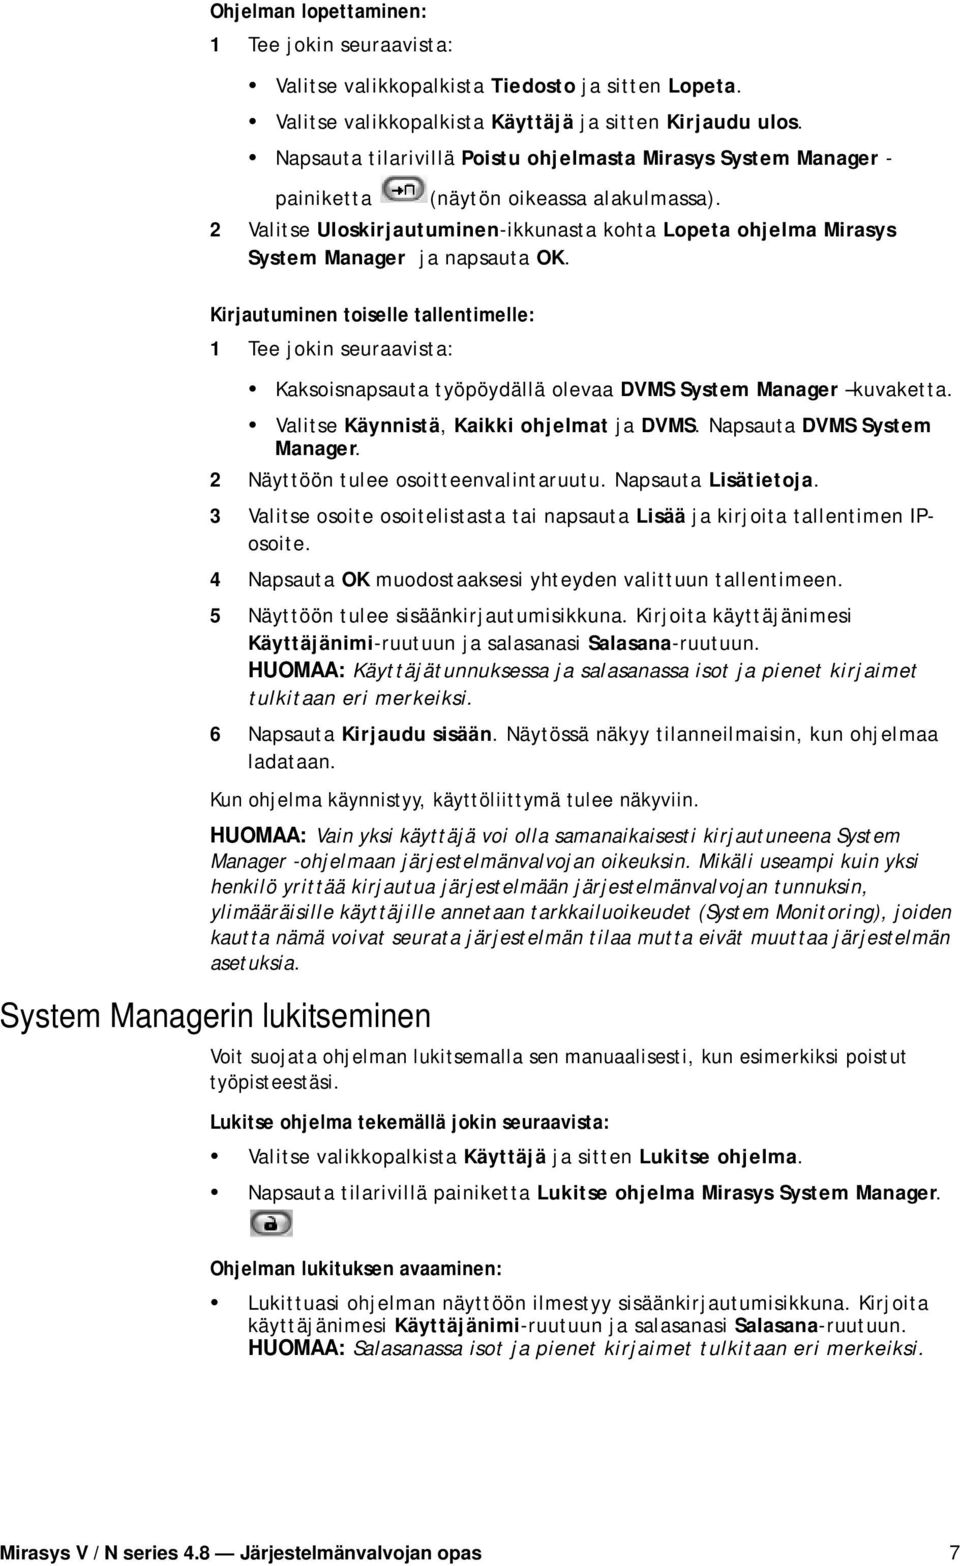 2 Valitse Uloskirjautuminen-ikkunasta kohta Lopeta ohjelma Mirasys System Manager ja napsauta OK.